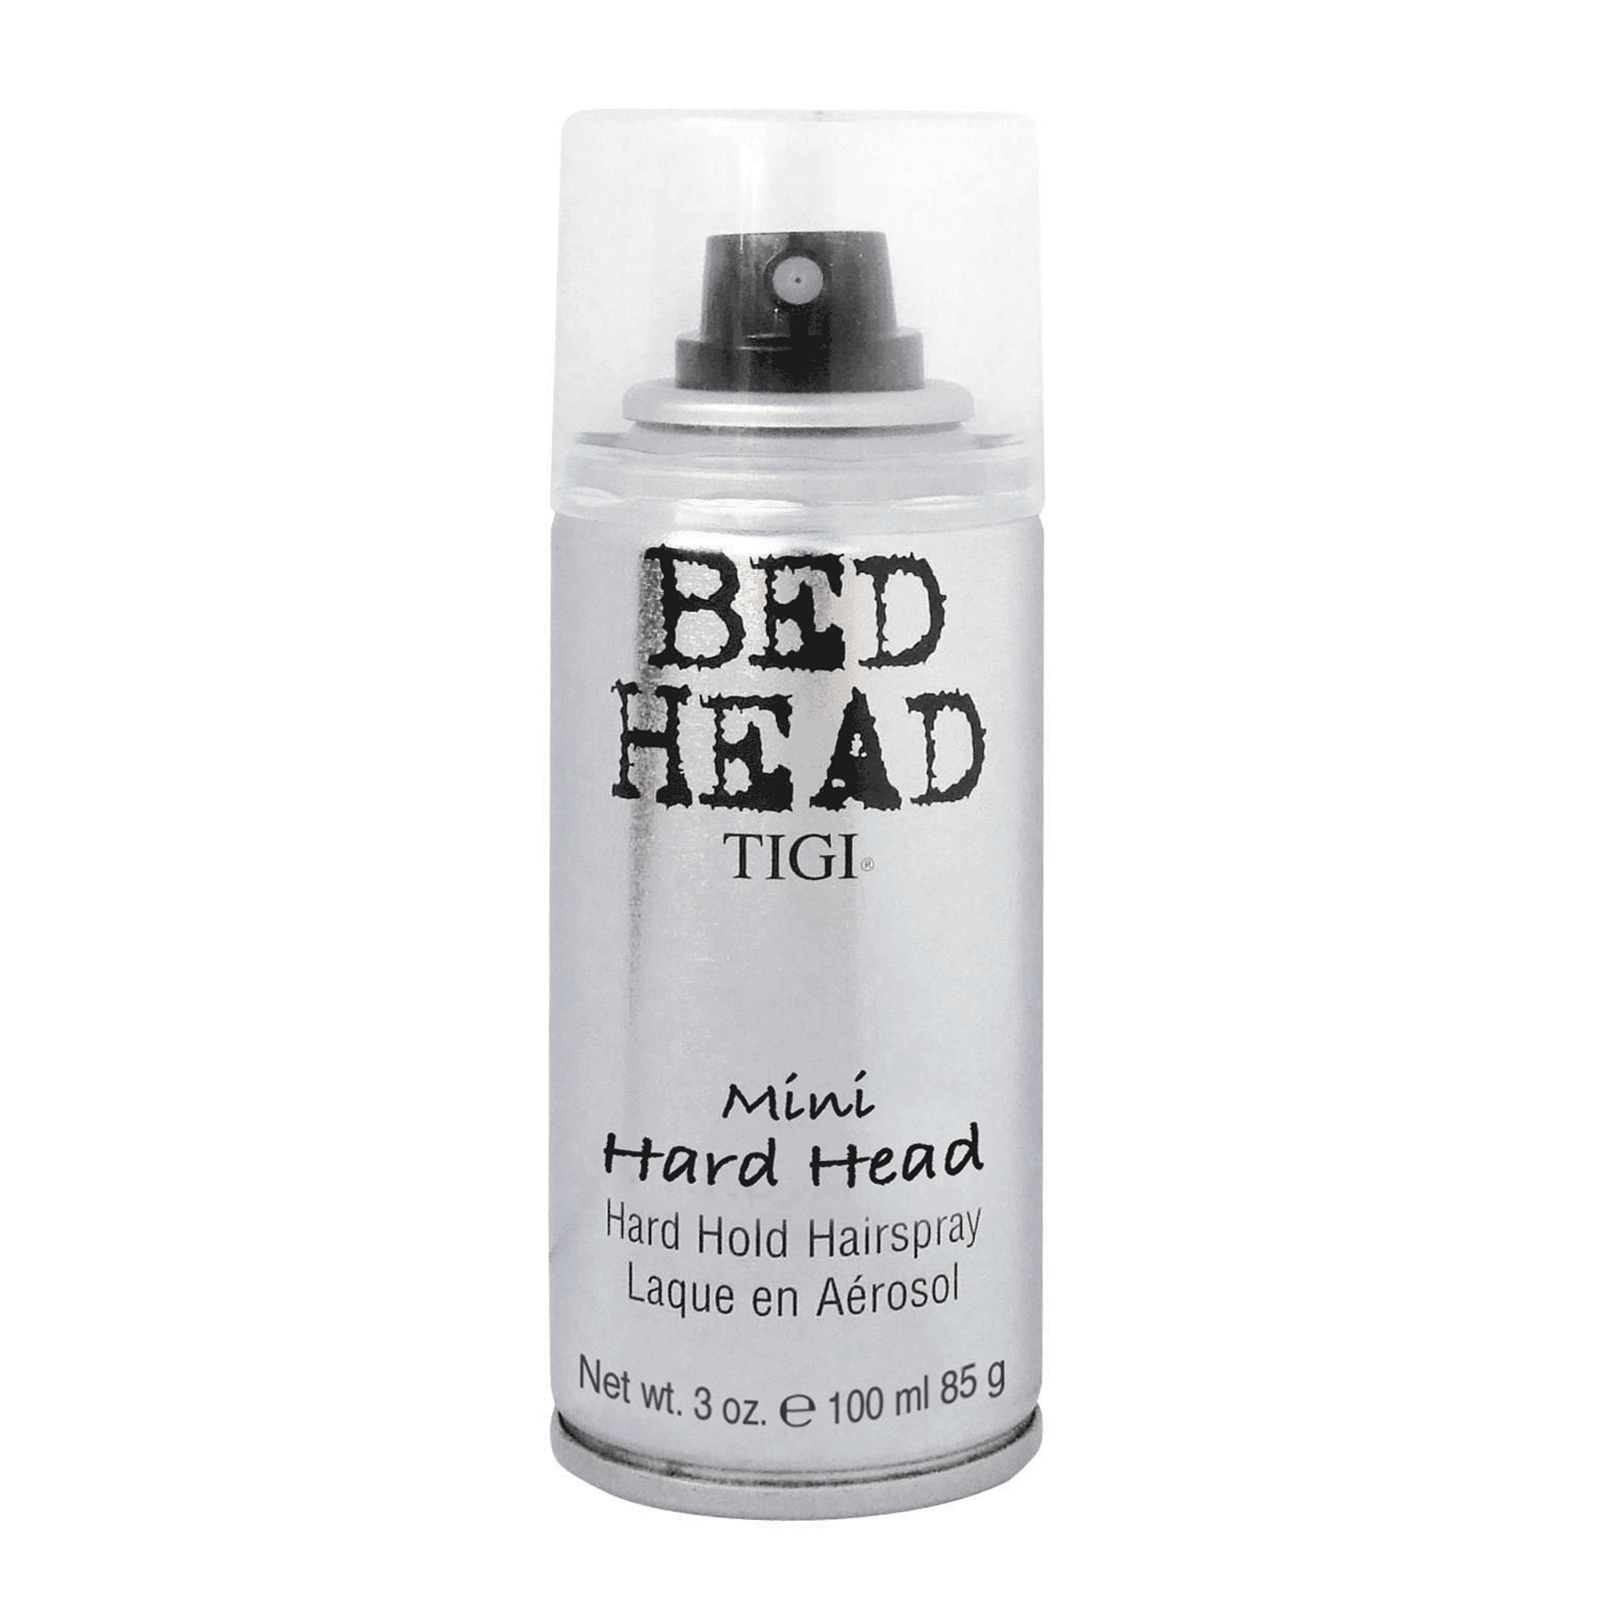 Bed Head Hard Head Hairspray - TIGI | CosmoProf